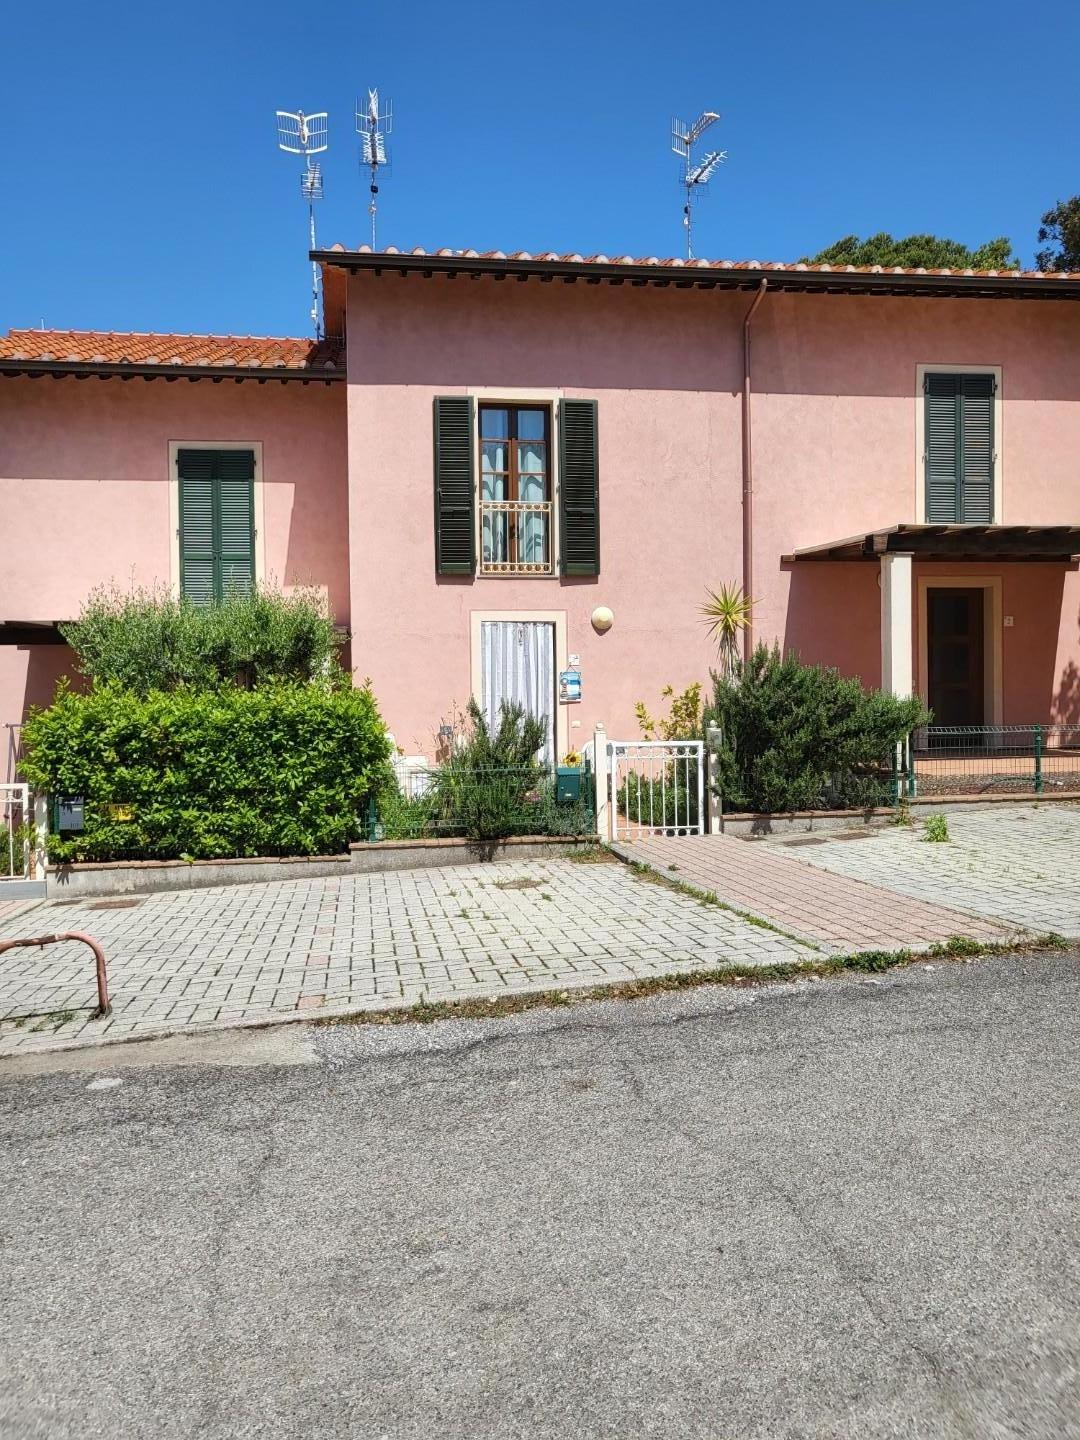 Villa a Schiera in vendita a Livorno, 4 locali, prezzo € 220.000 | PortaleAgenzieImmobiliari.it